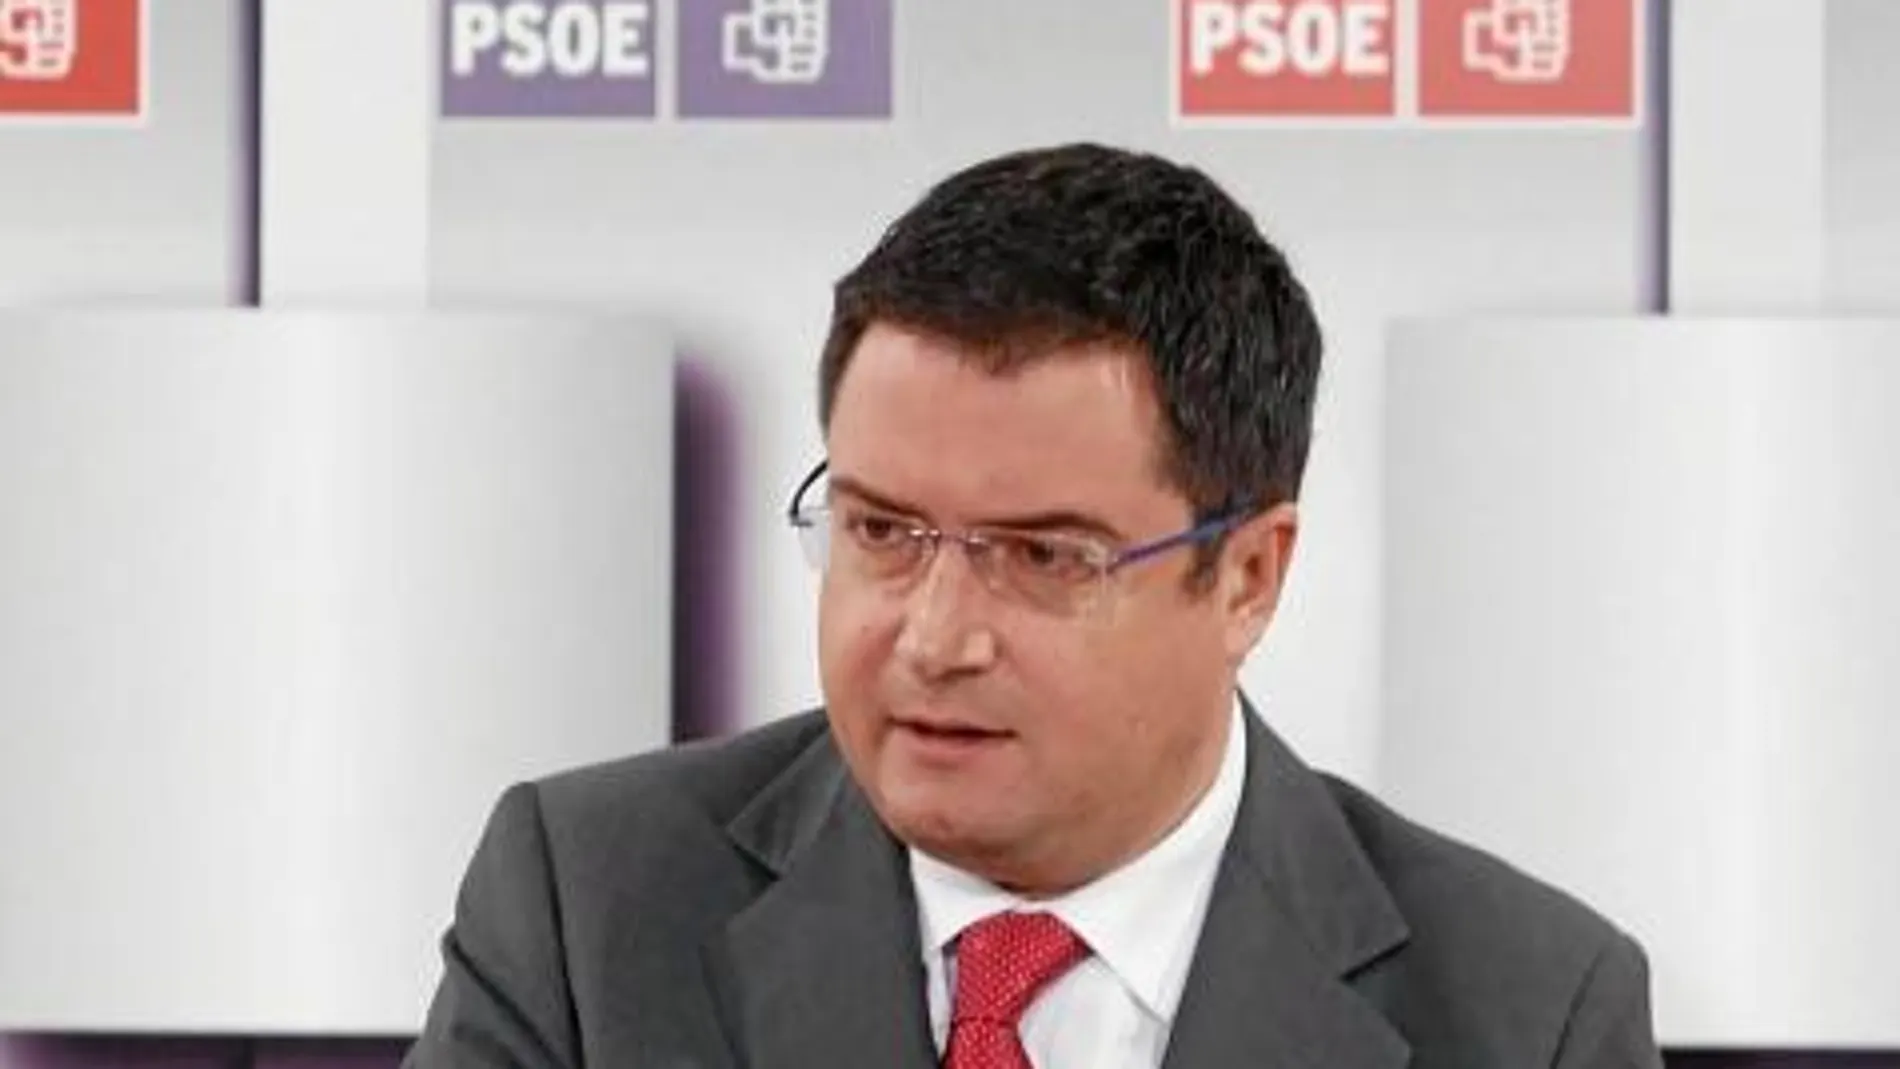 Óscar López